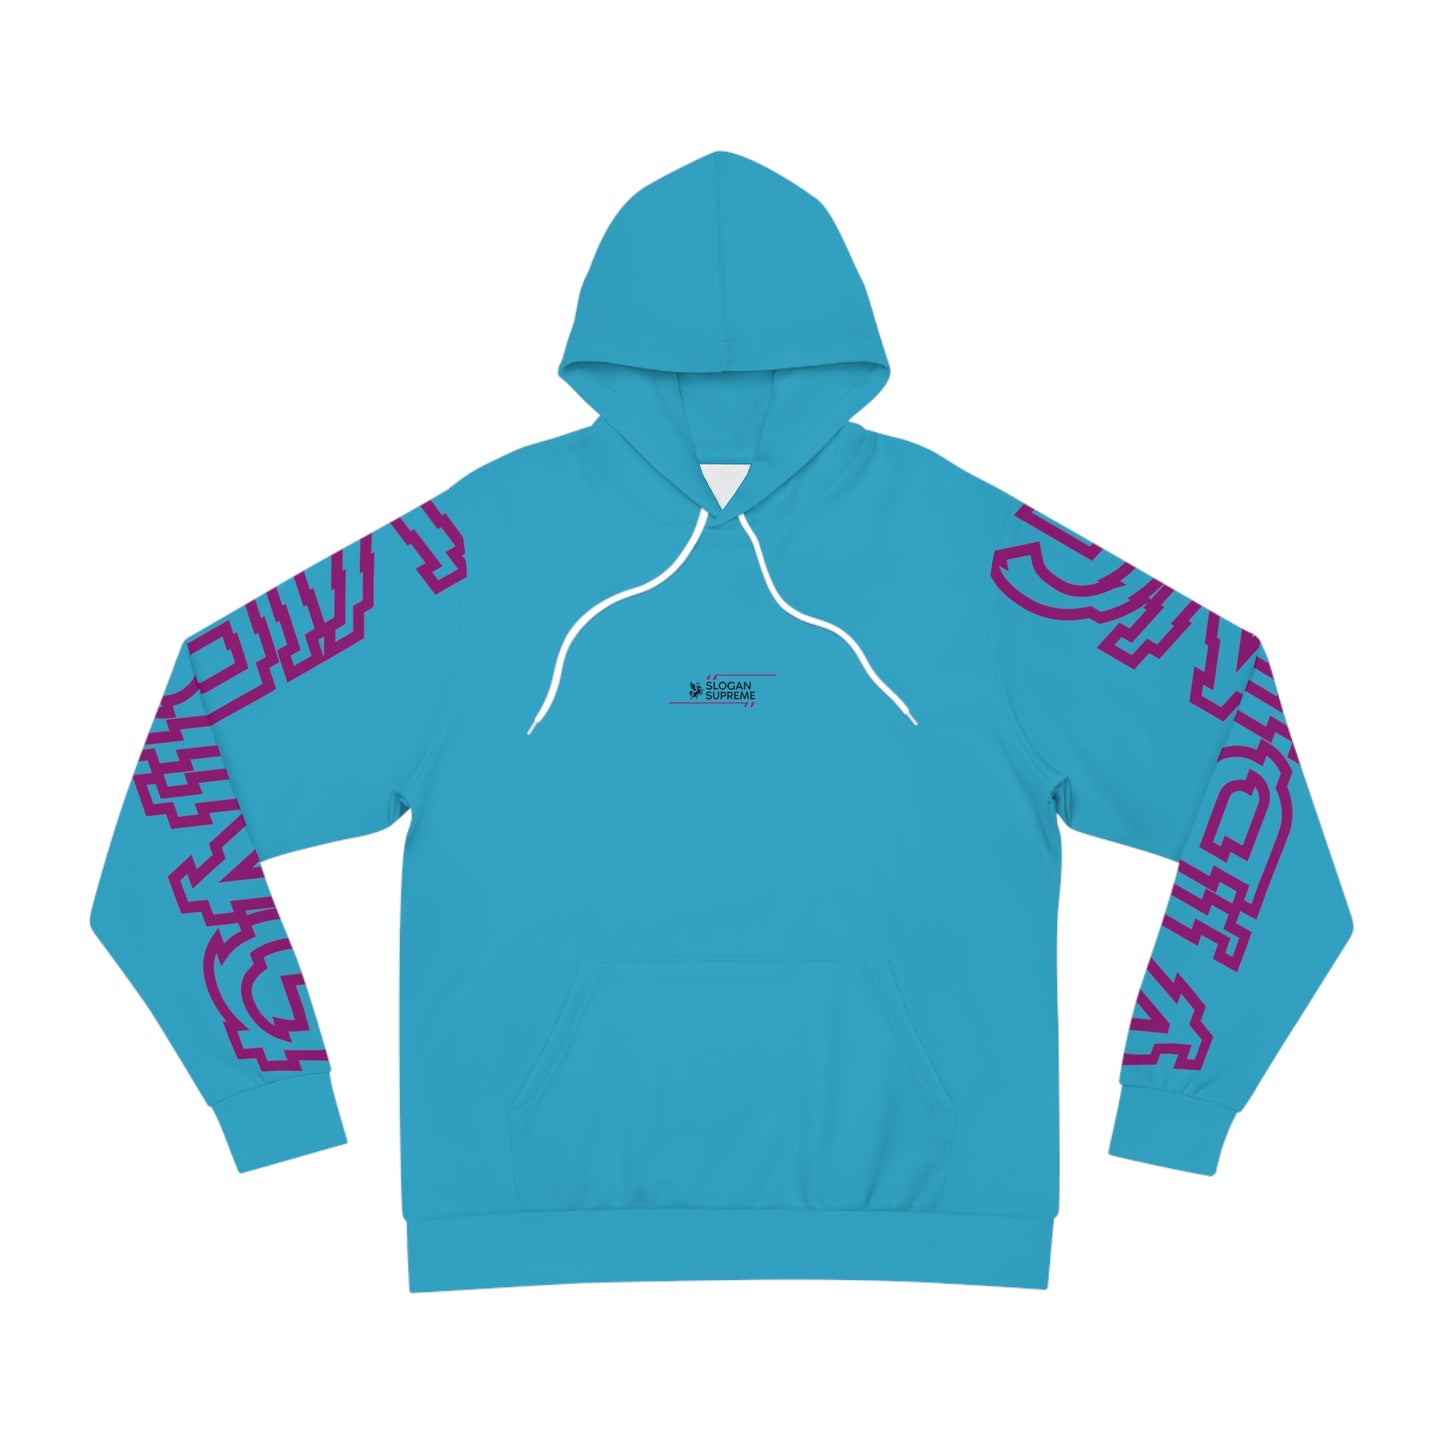 Vibing hoodie - Unisex - Blue